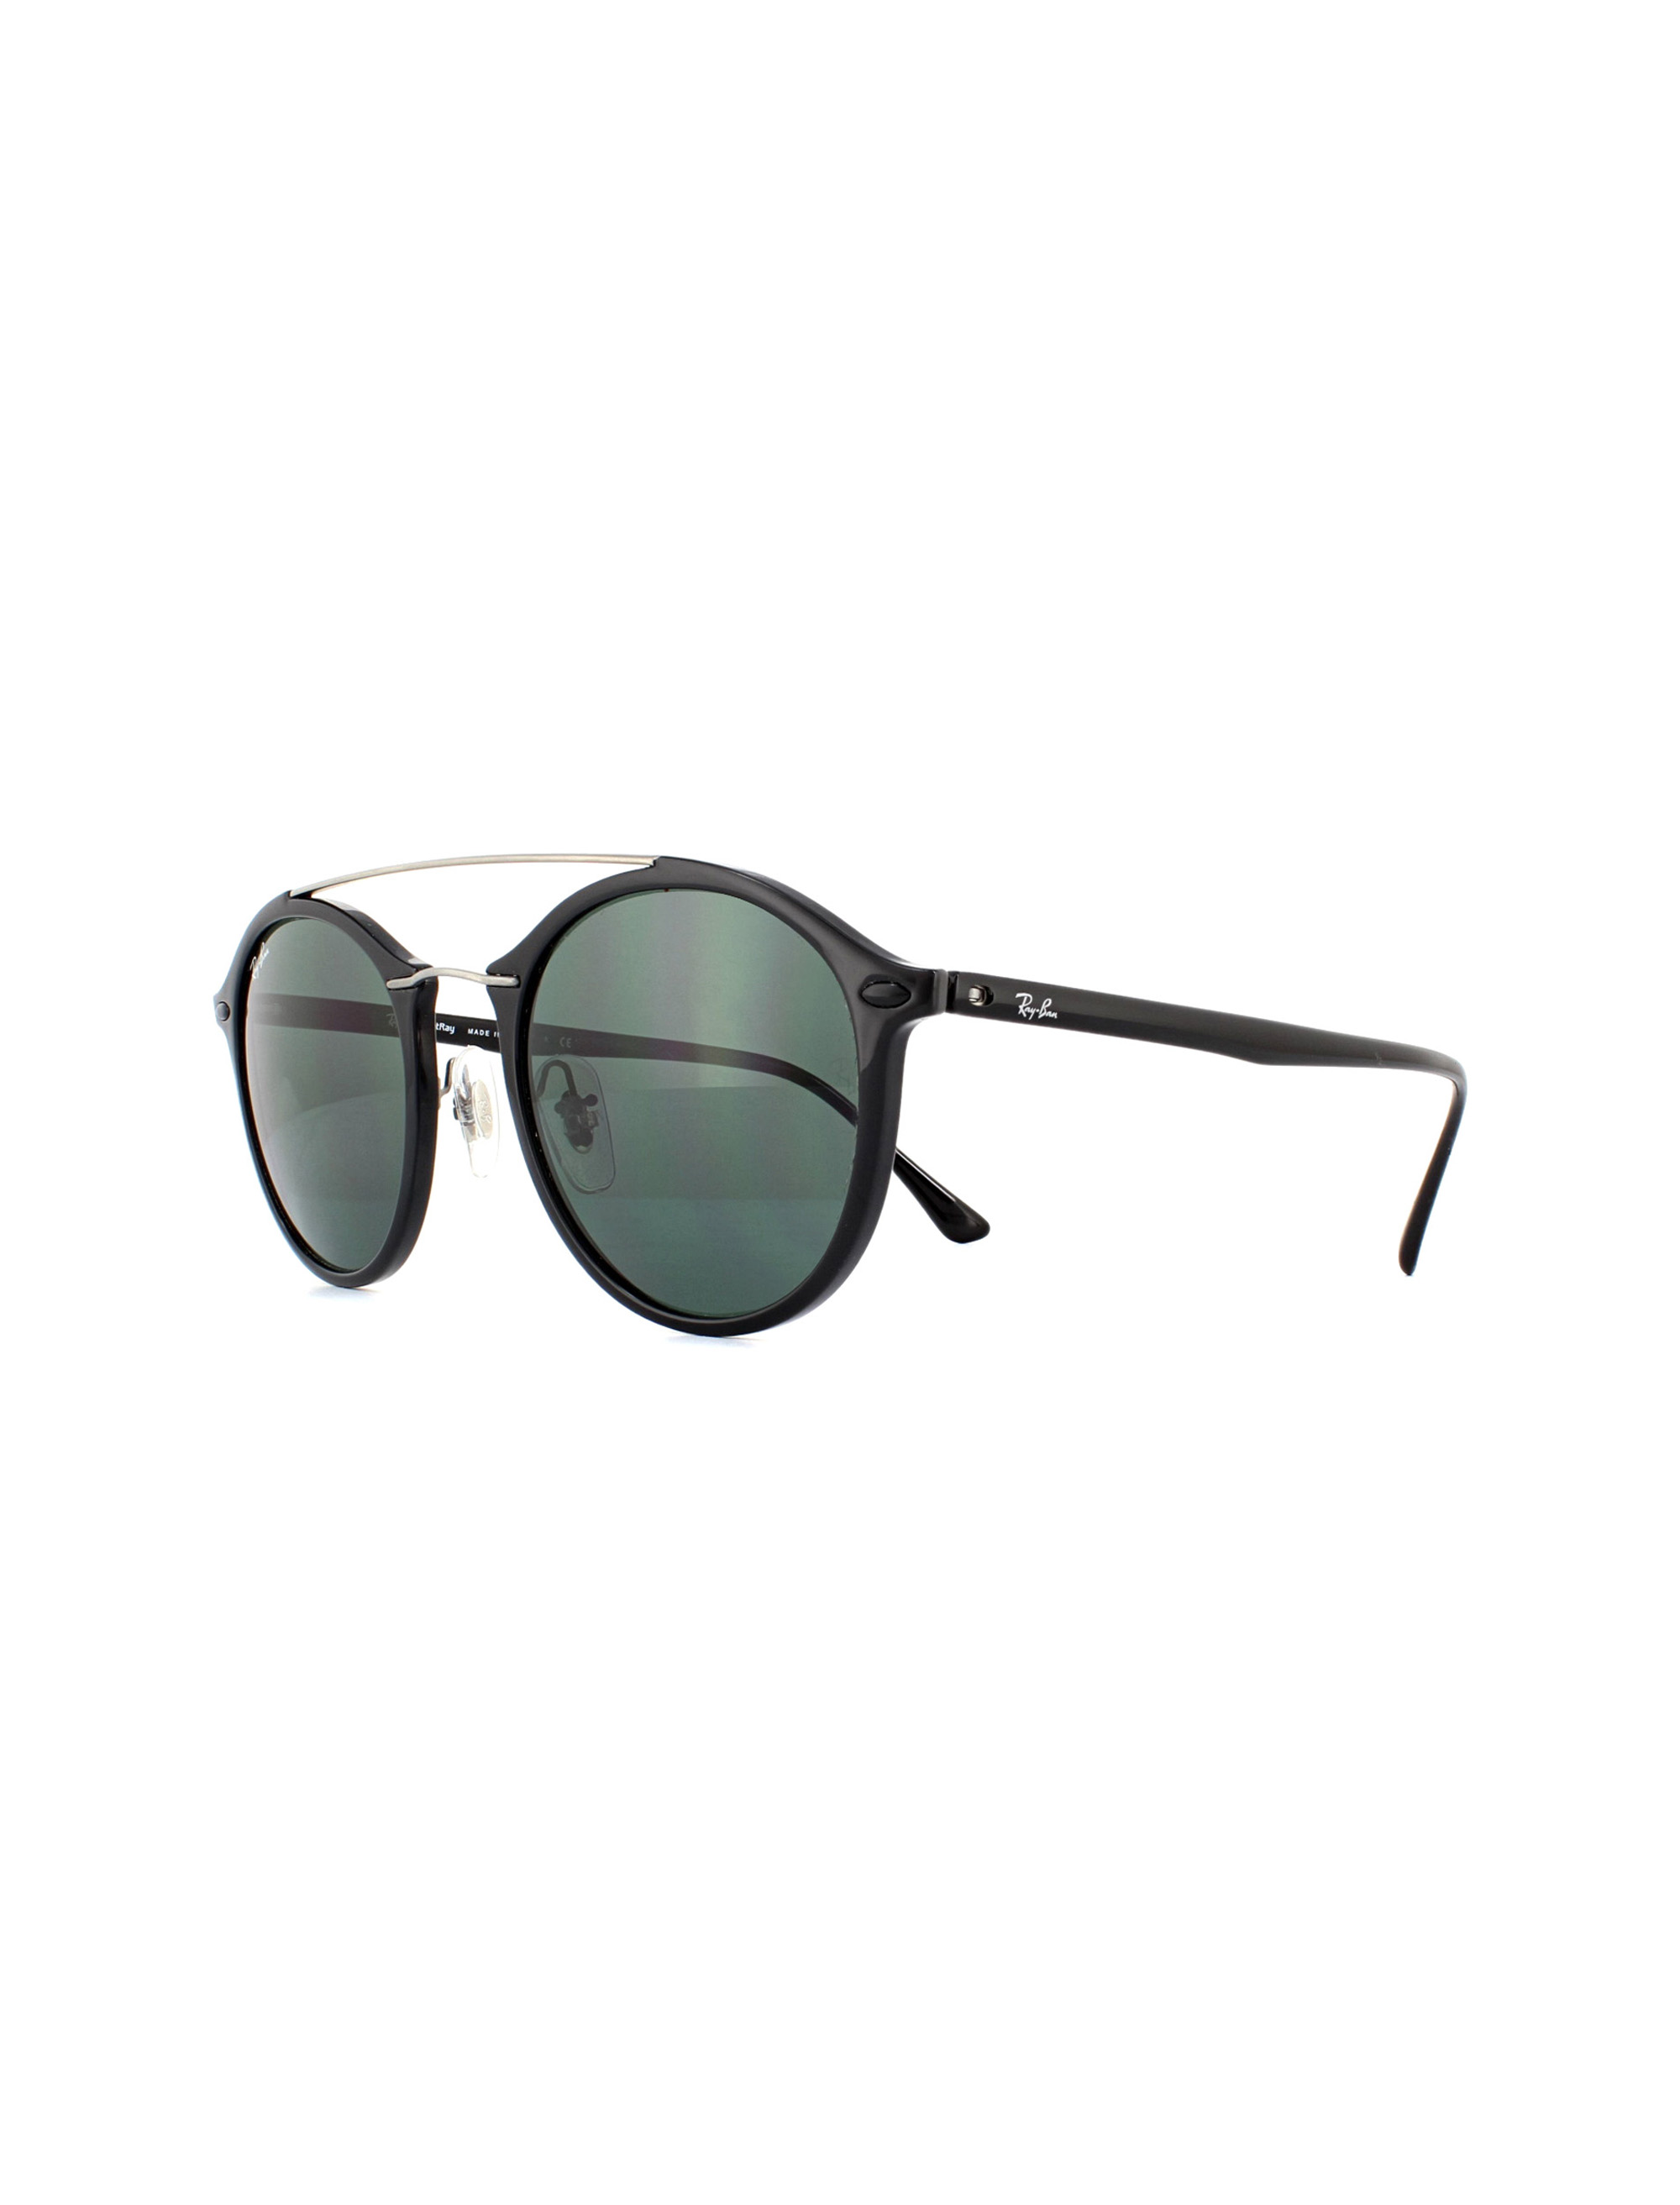 عینک آفتابی ری بن مدل 4266-601/71